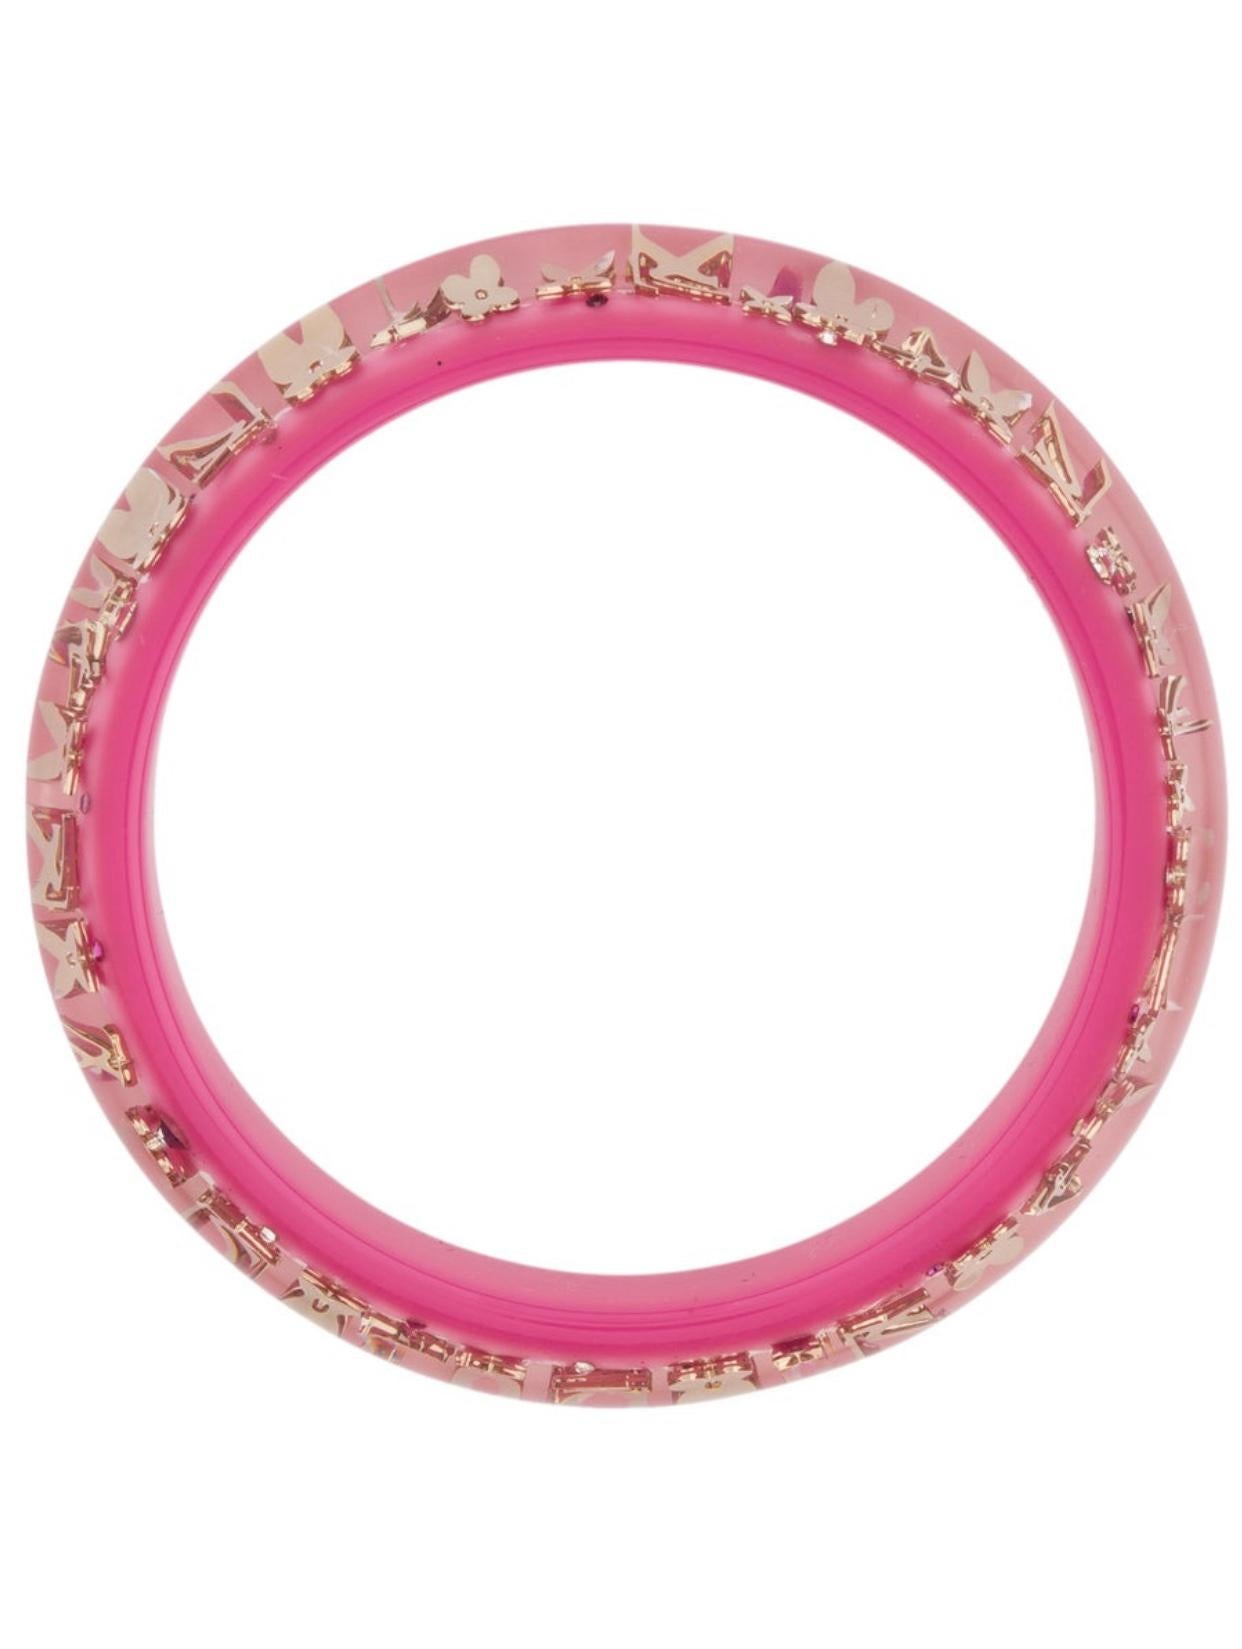 louis vuitton bracelet pink